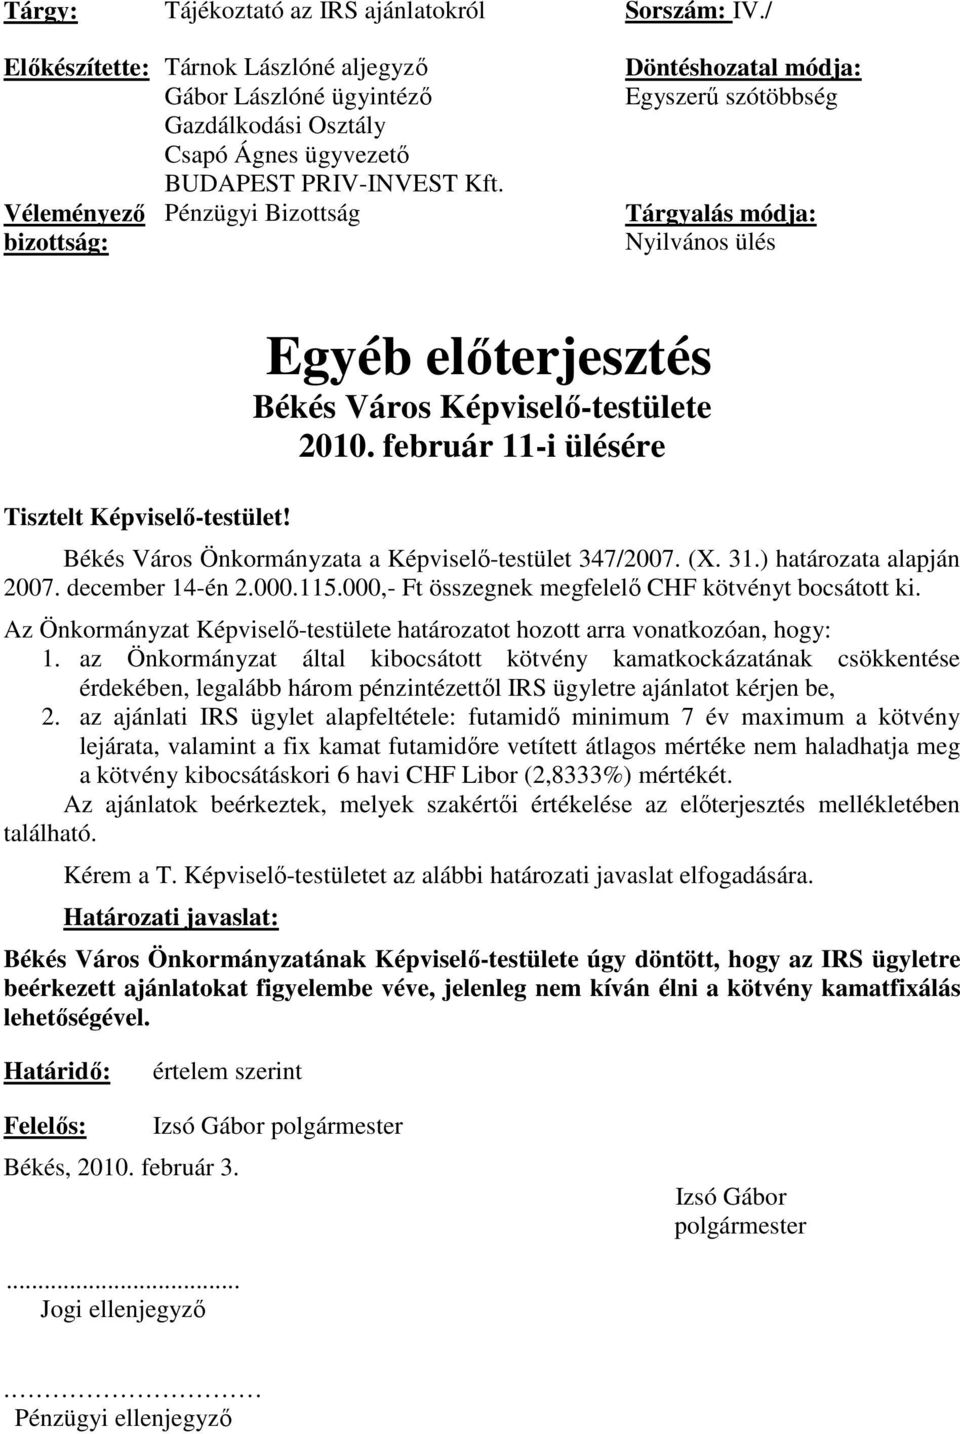 Egyéb elıterjesztés Békés Város Képviselı-testülete 2010. február 11-i ülésére Békés Város Önkormányzata a Képviselı-testület 347/2007. (X. 31.) határozata alapján 2007. december 14-én 2.000.115.